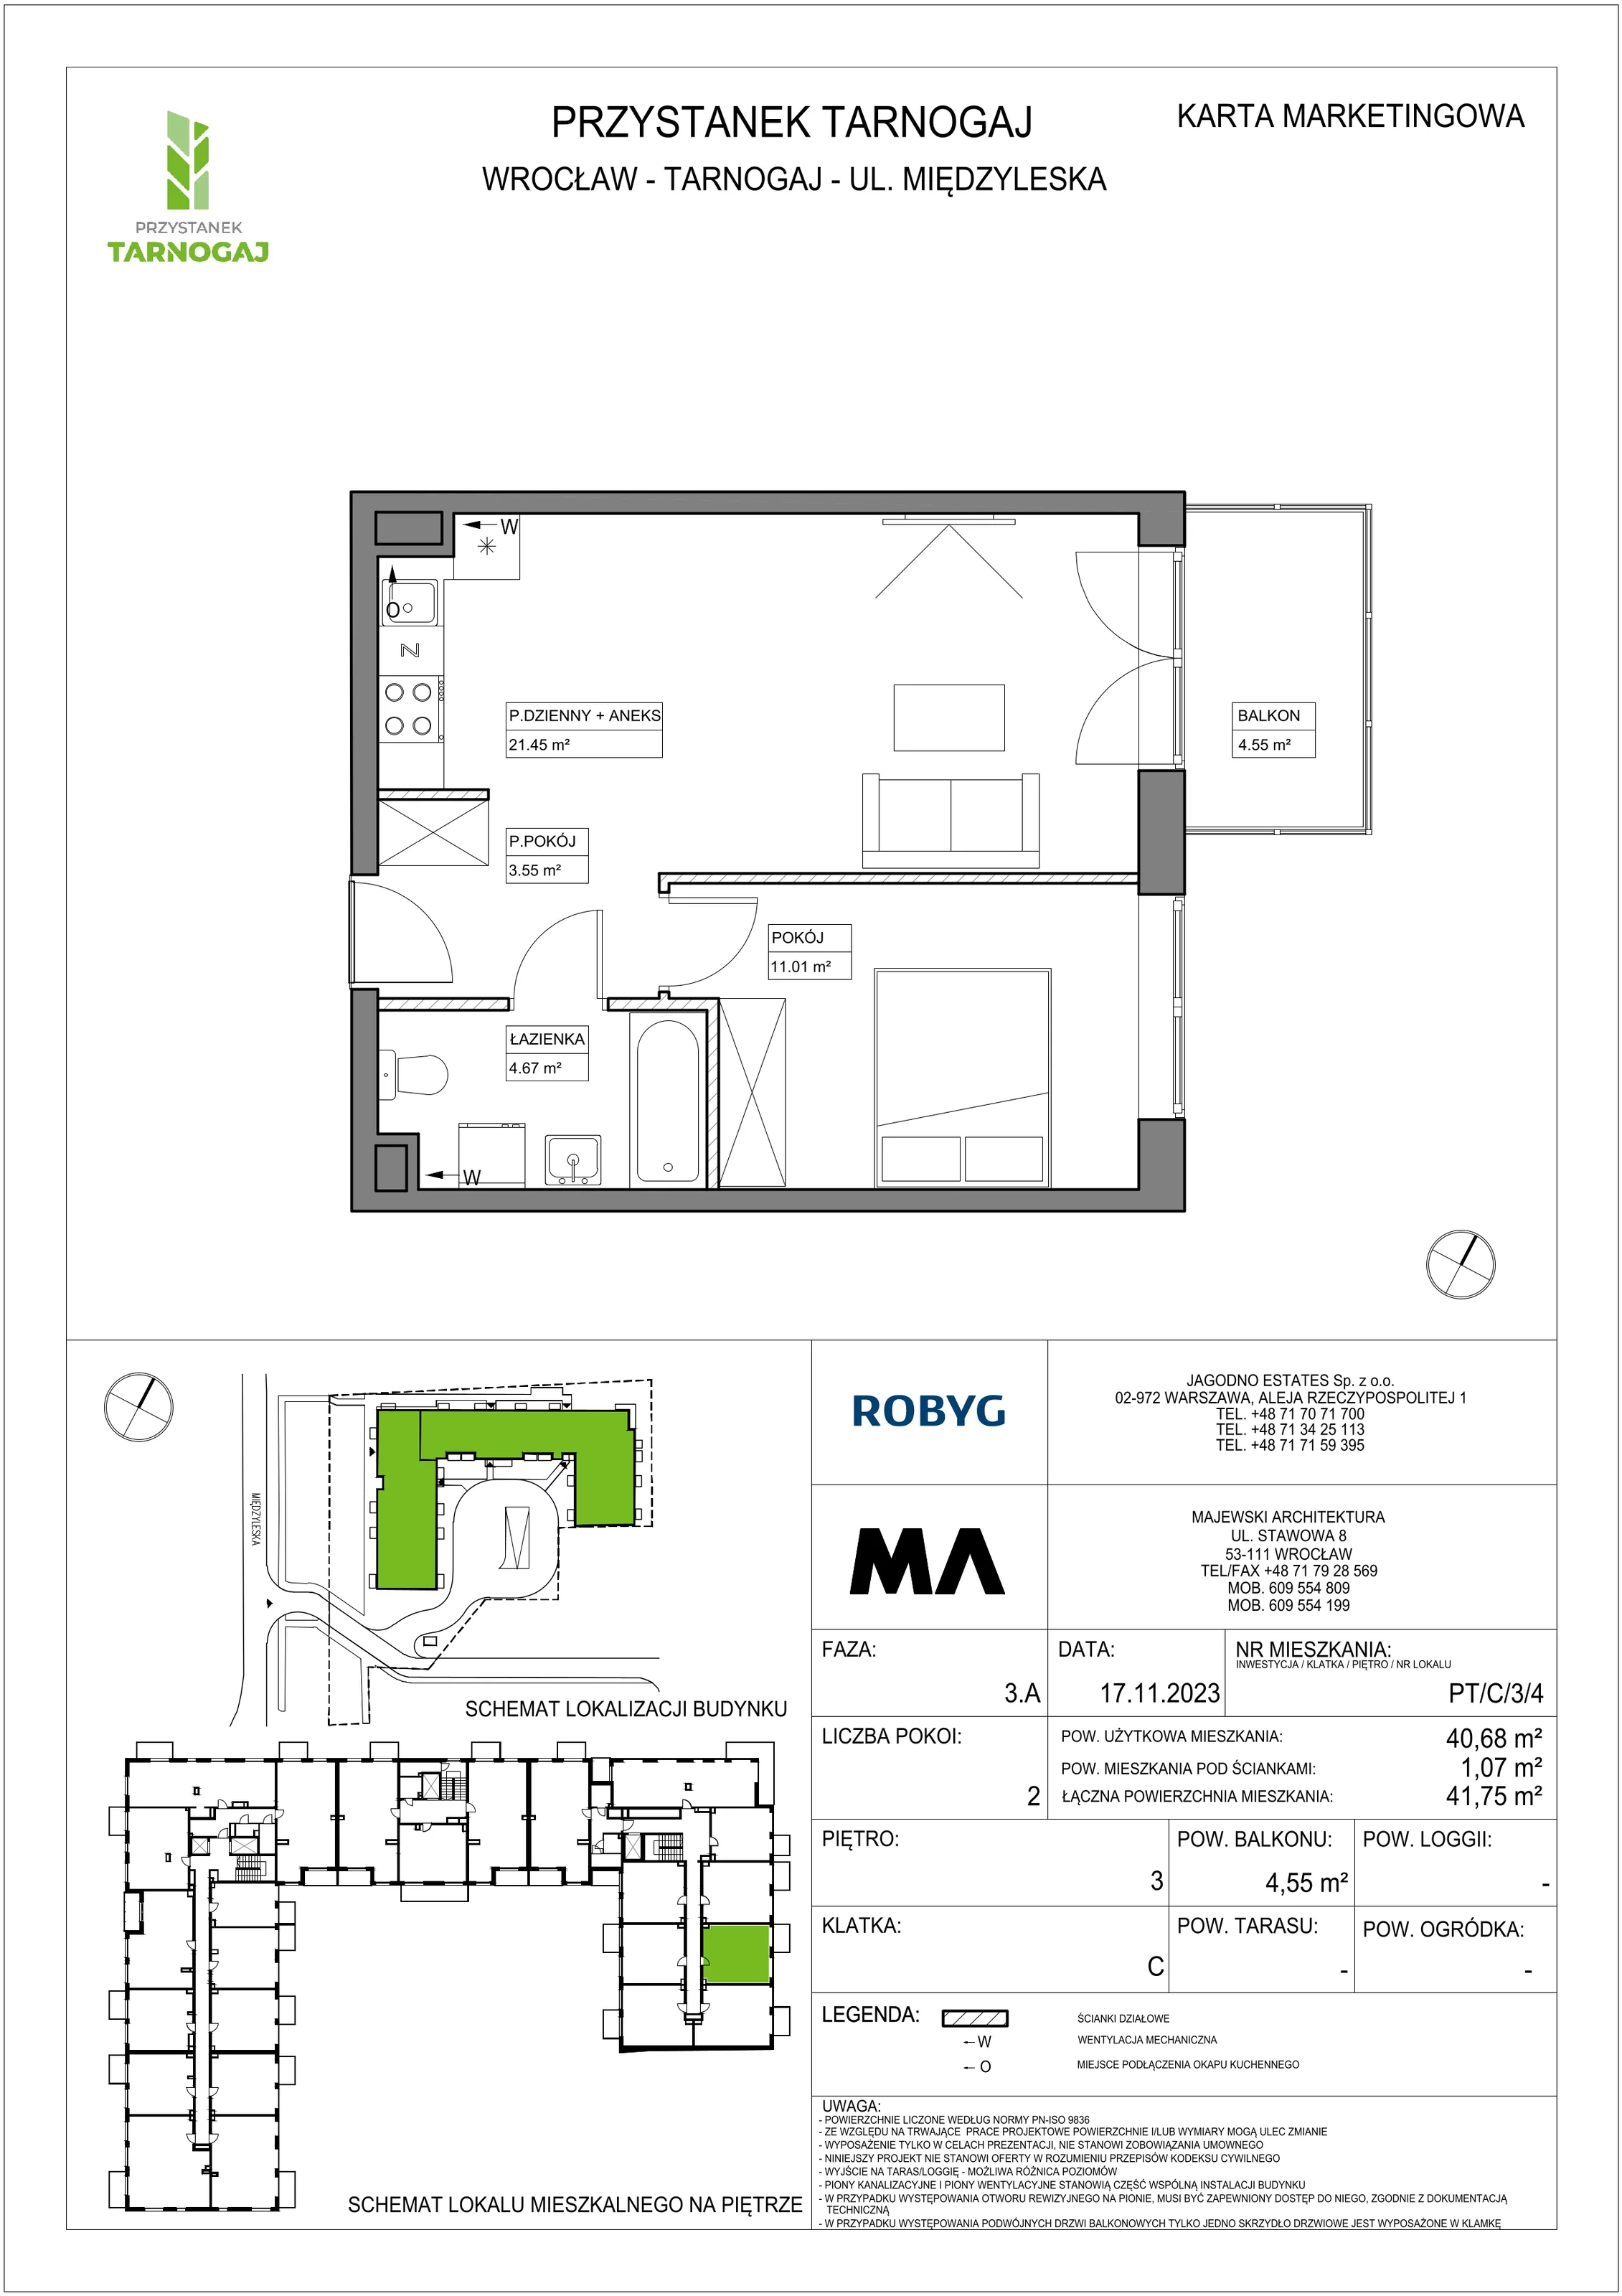 Mieszkanie 40,68 m², piętro 3, oferta nr PT/C/3/4, Przystanek Tarnogaj, Wrocław, Tarnogaj, Krzyki, ul. Międzyleska / Gazowa